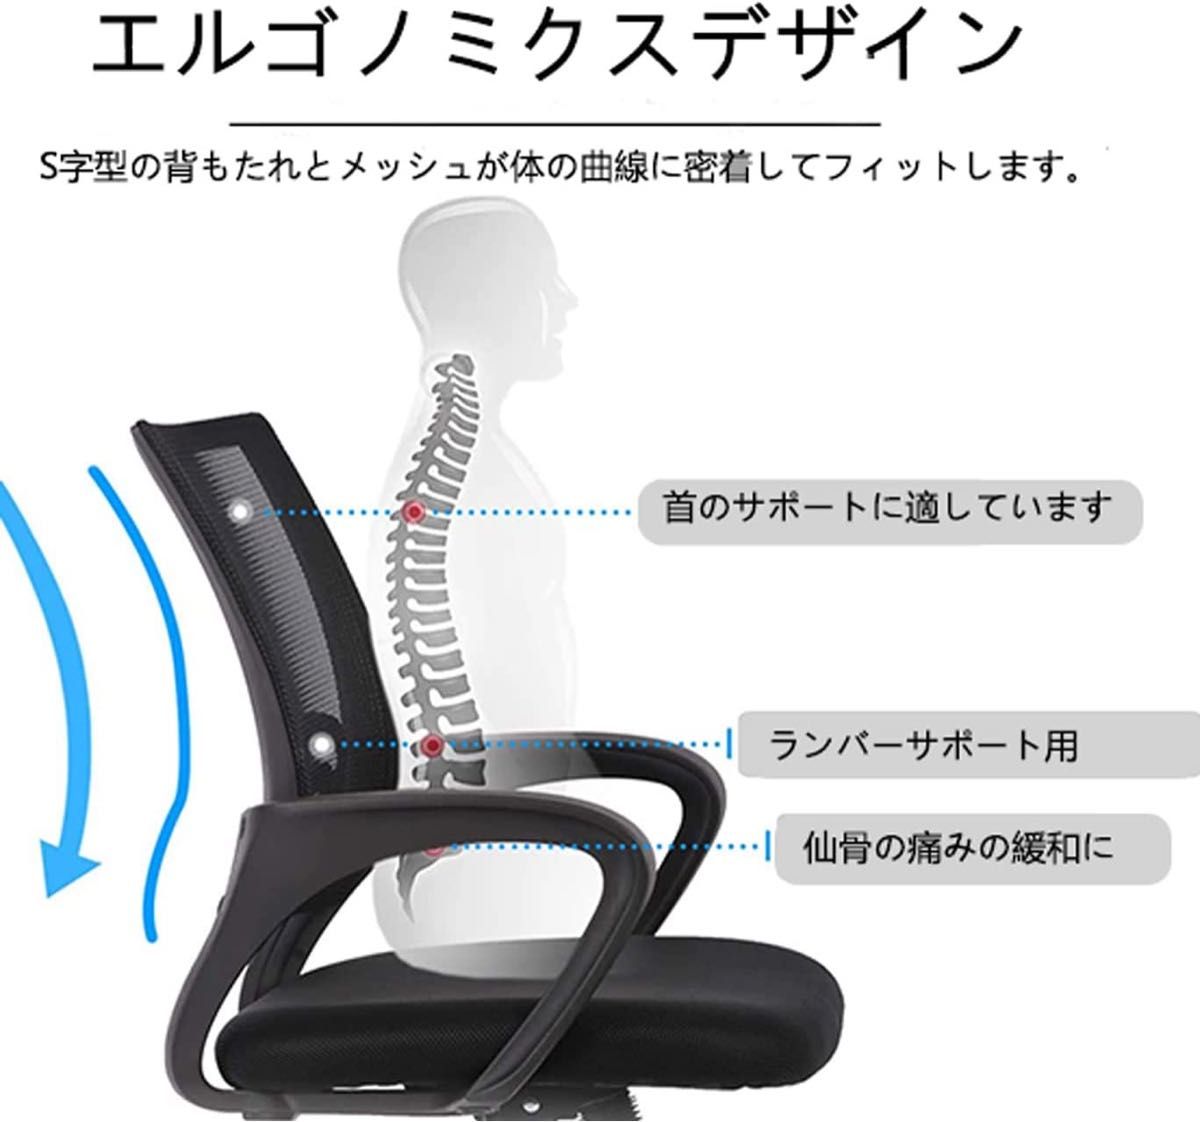 新品 パソコンチェア オフィスチェア デスクチェア 回転椅子 事務椅子 ブラック 金属製脚部